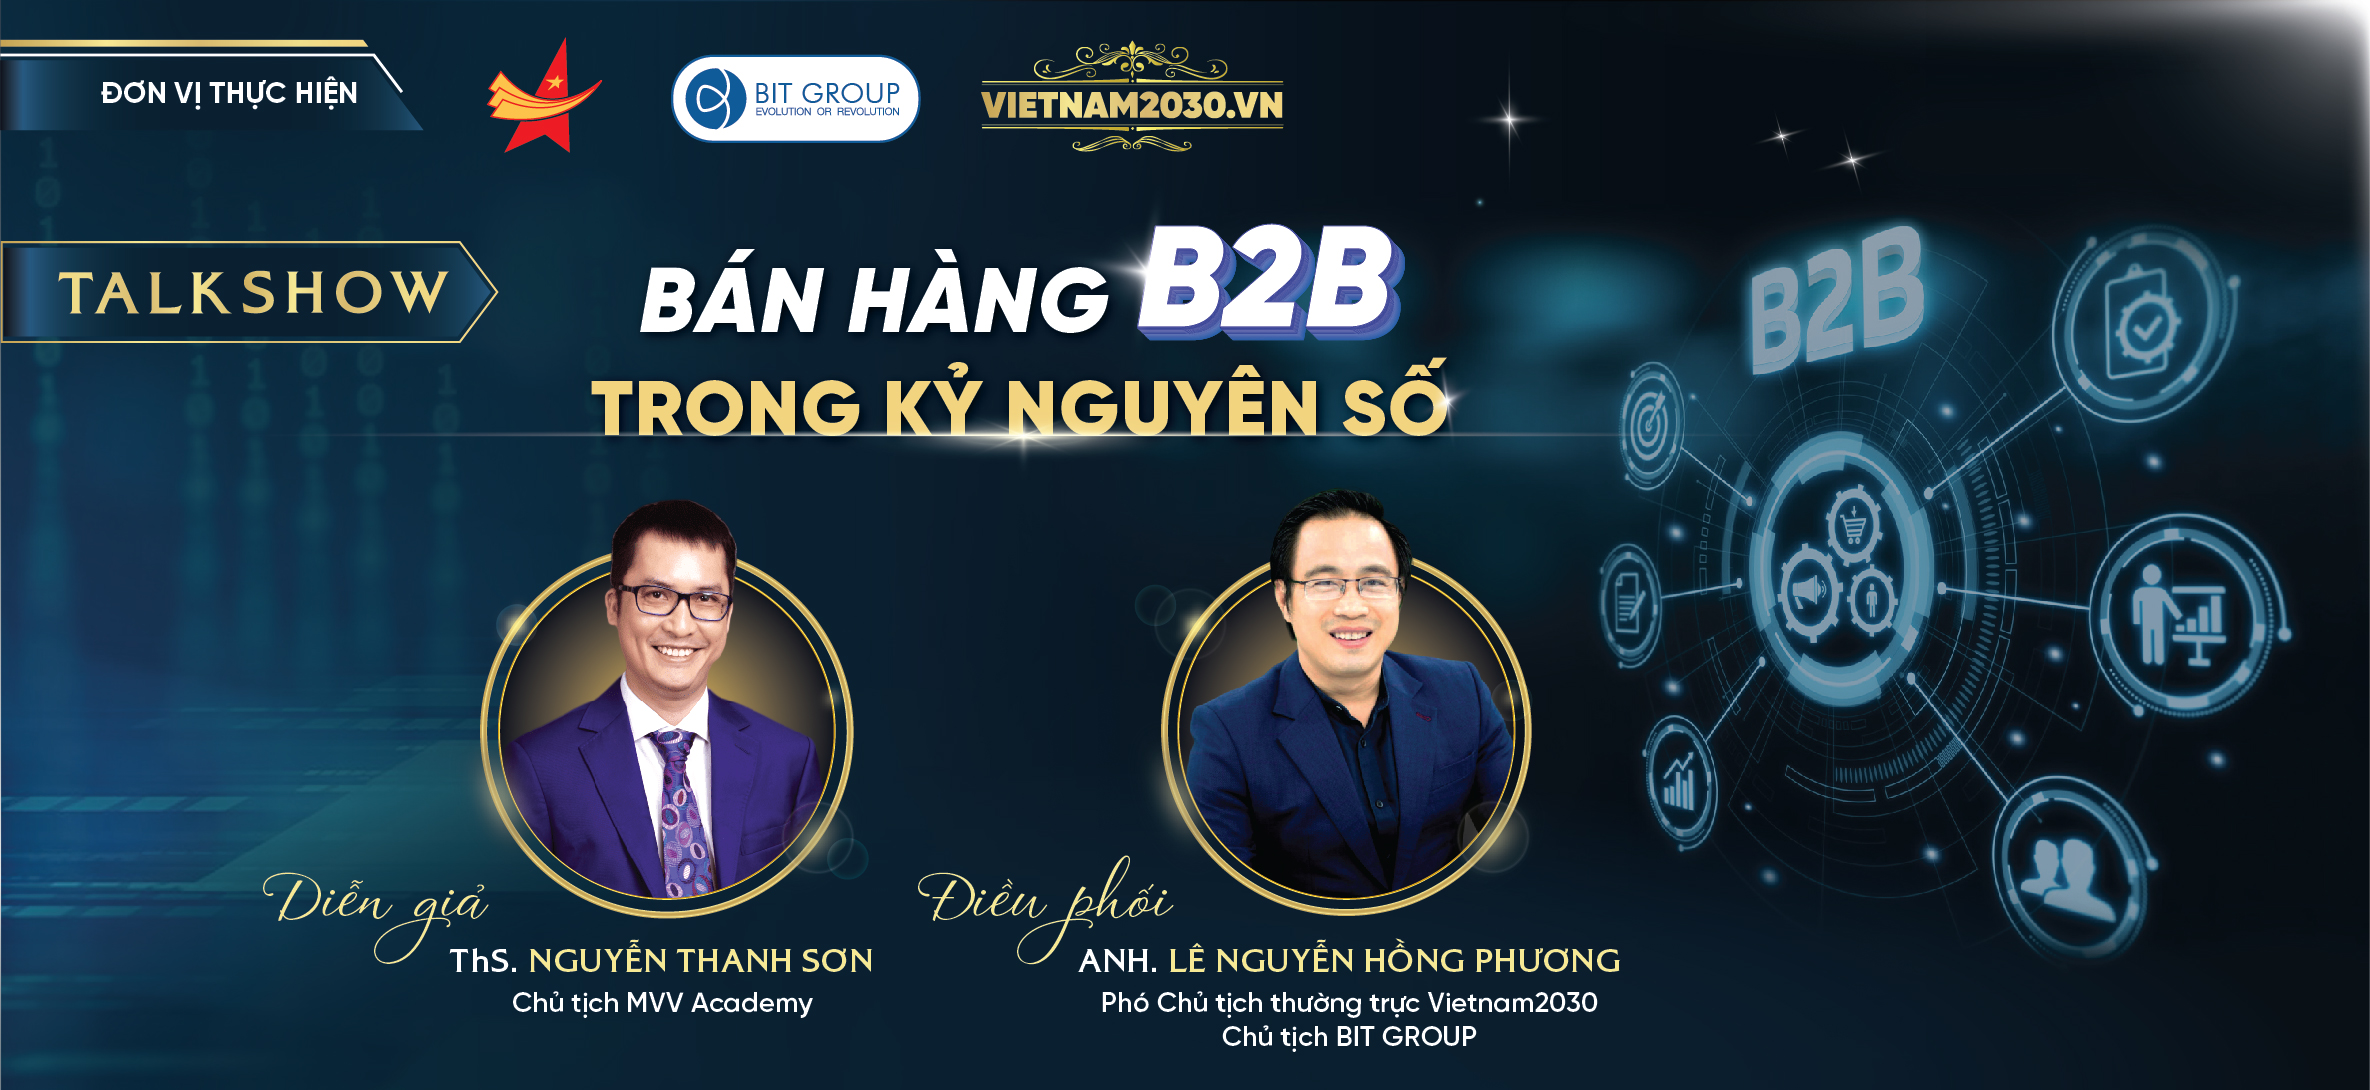 #44 Talkshow online: “BÁN HÀNG B2B TRONG KỶ NGUYÊN SỐ” | Vietnam2030.vn